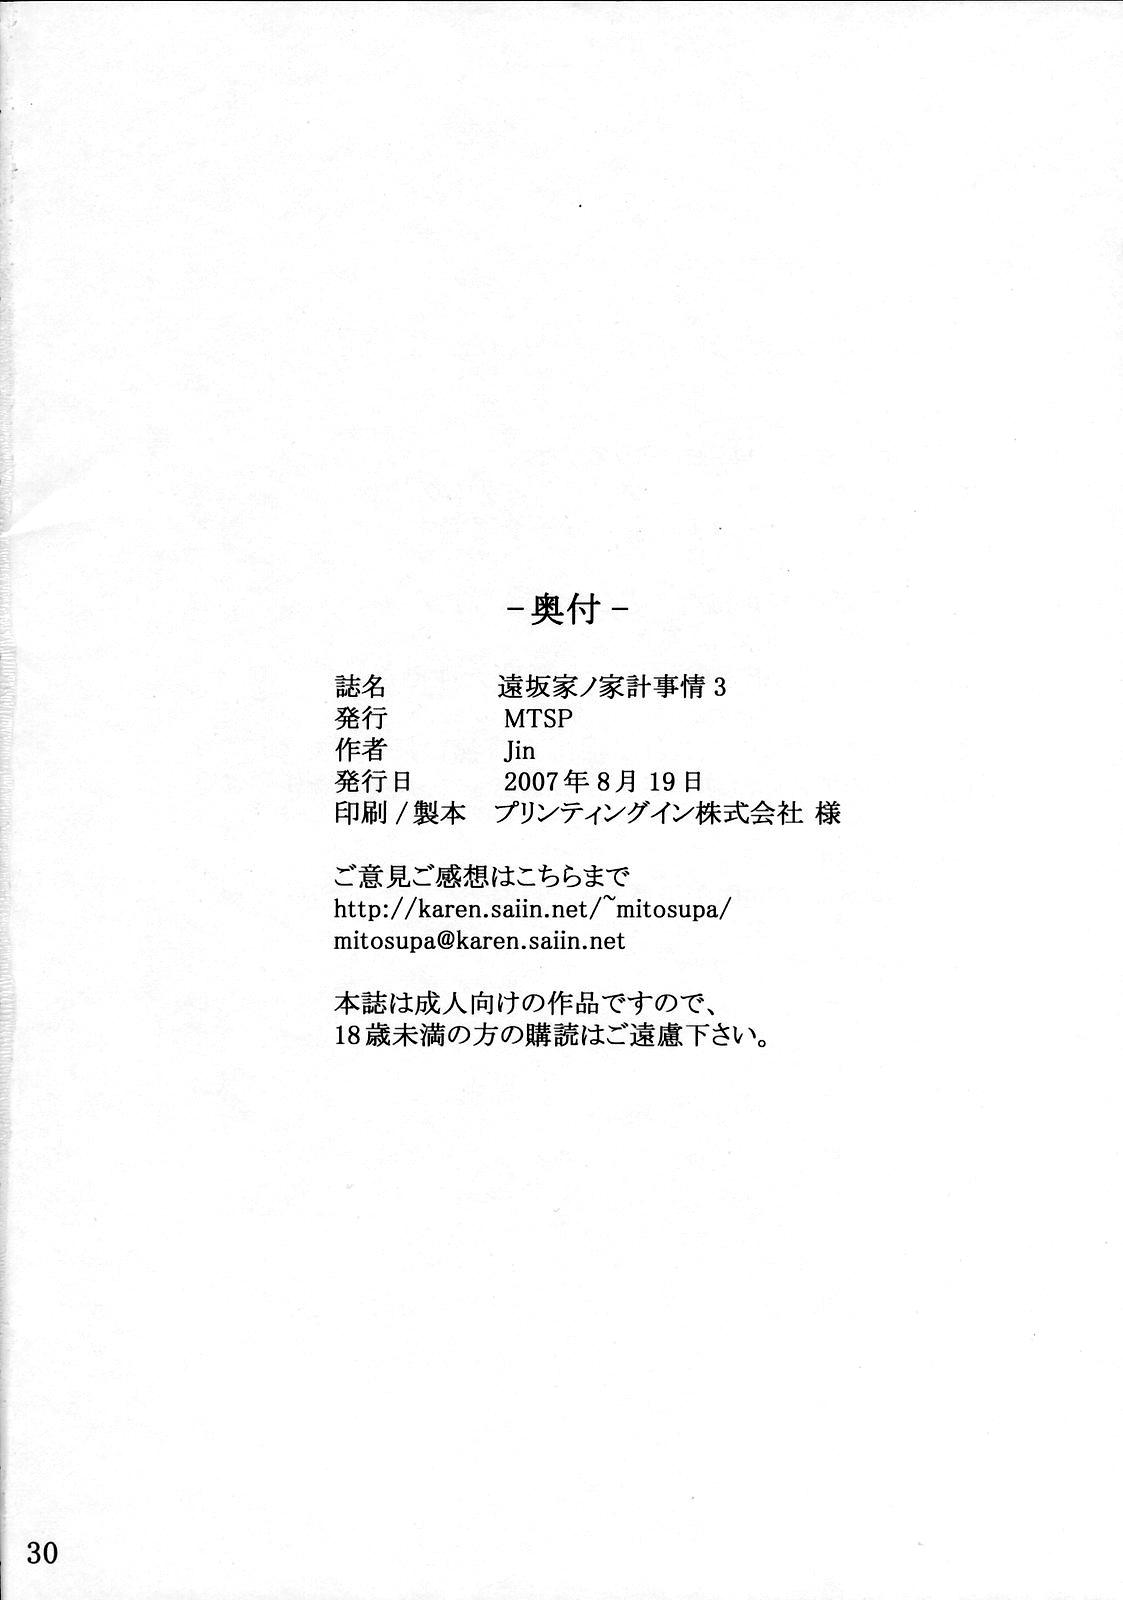 Ball Licking Tohsaka-ke no Kakei Jijou 3 - Fate stay night Underwear - Page 29